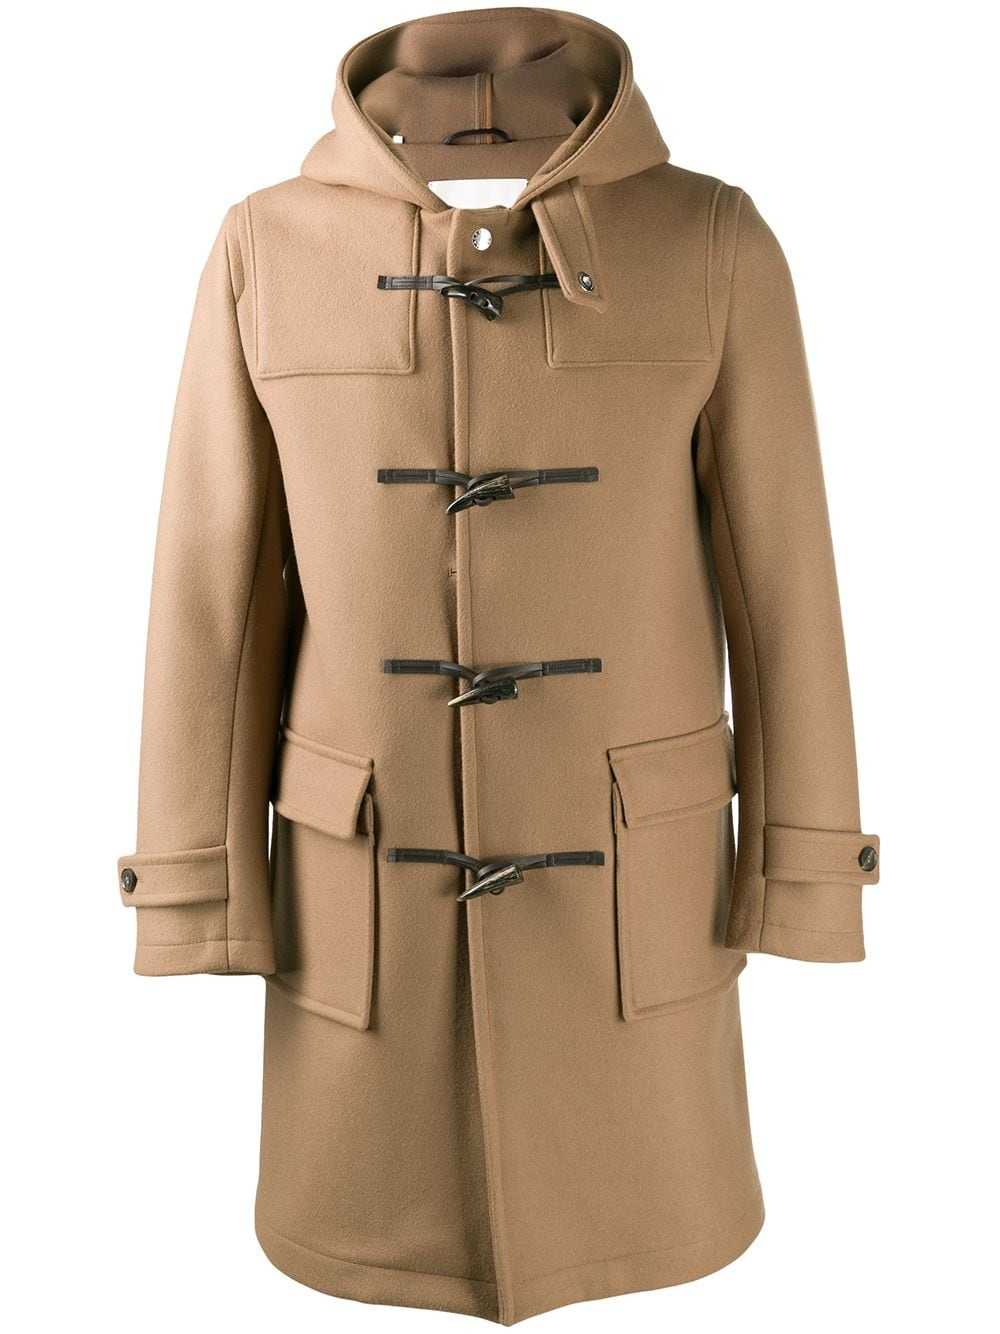 Пальто дафлкот: как и с чем носить эту модель верхней одежды